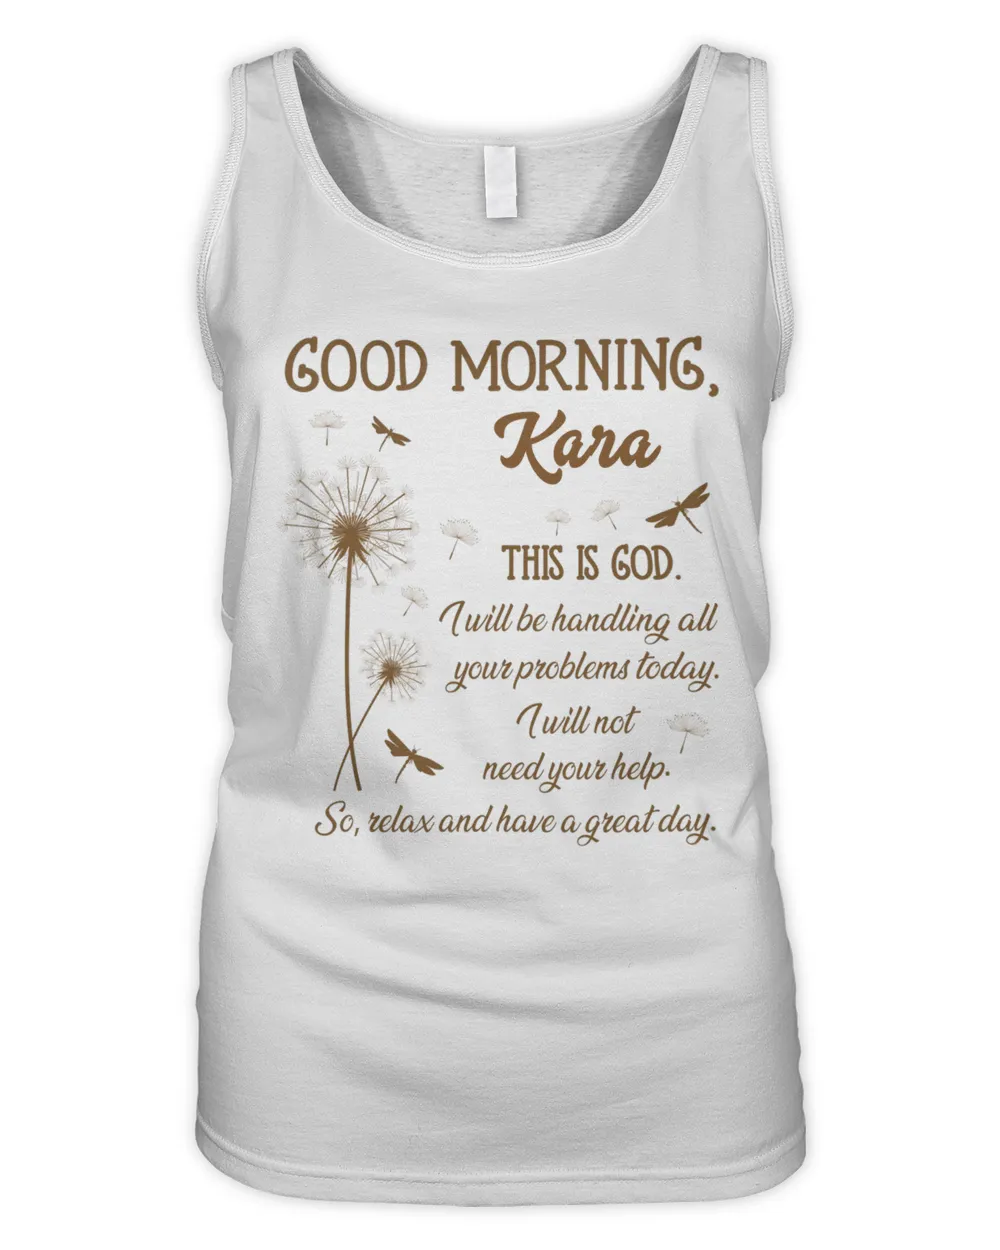 Kara Good Morning